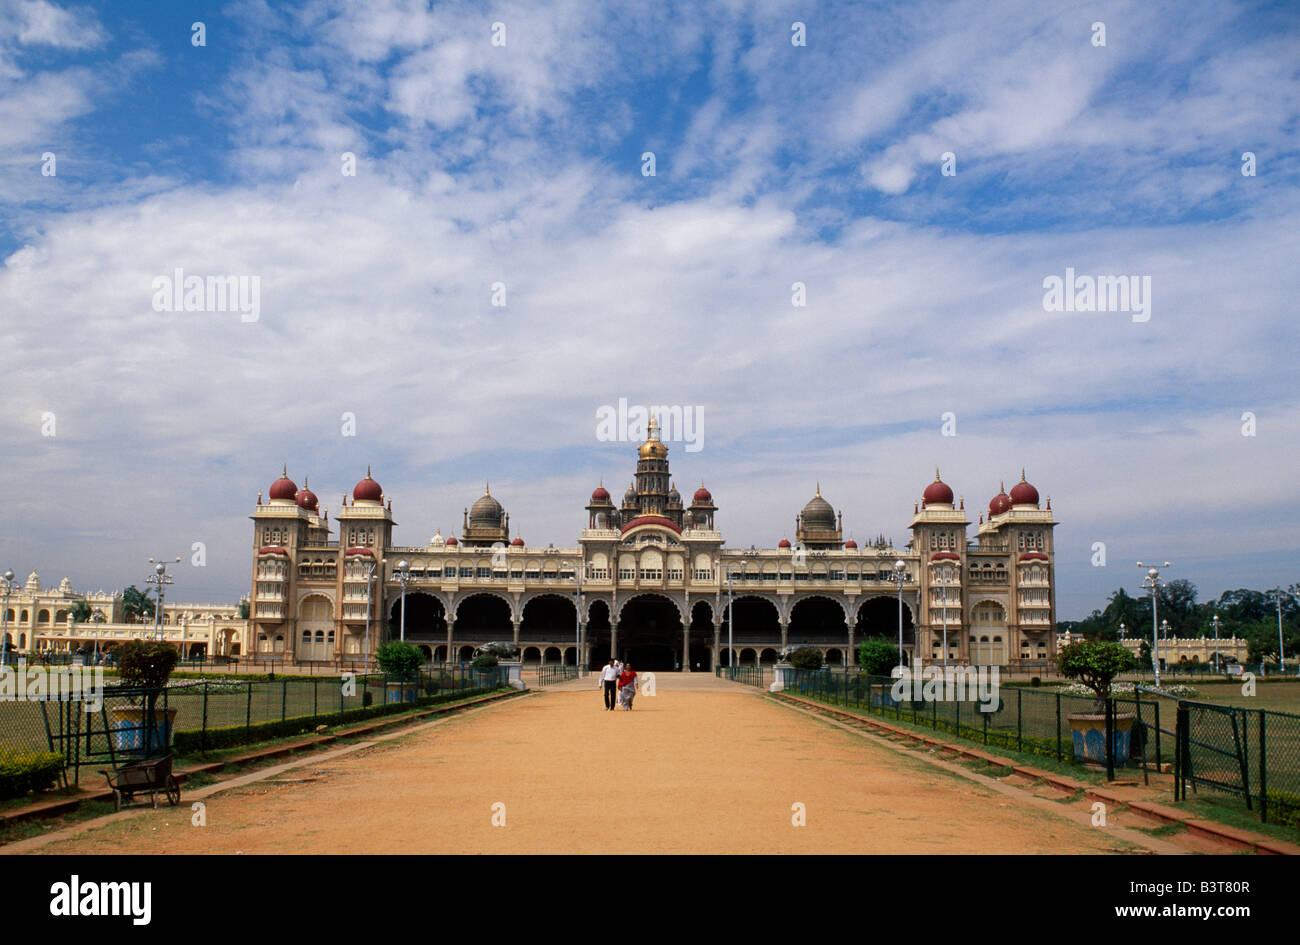 Indien, Karnataka Provinz, Mysore. Der Maharaja-Palast, entworfen im Indo-sarazenischen Stil-Hybrid von Henry Irwin, der britische Berater Architekt der Madras Zustand, wurde im Jahre 1912 für die 24. Wadiyar Raja abgeschlossen. Zwölf Tempeln umgeben den Palast. Stockfoto